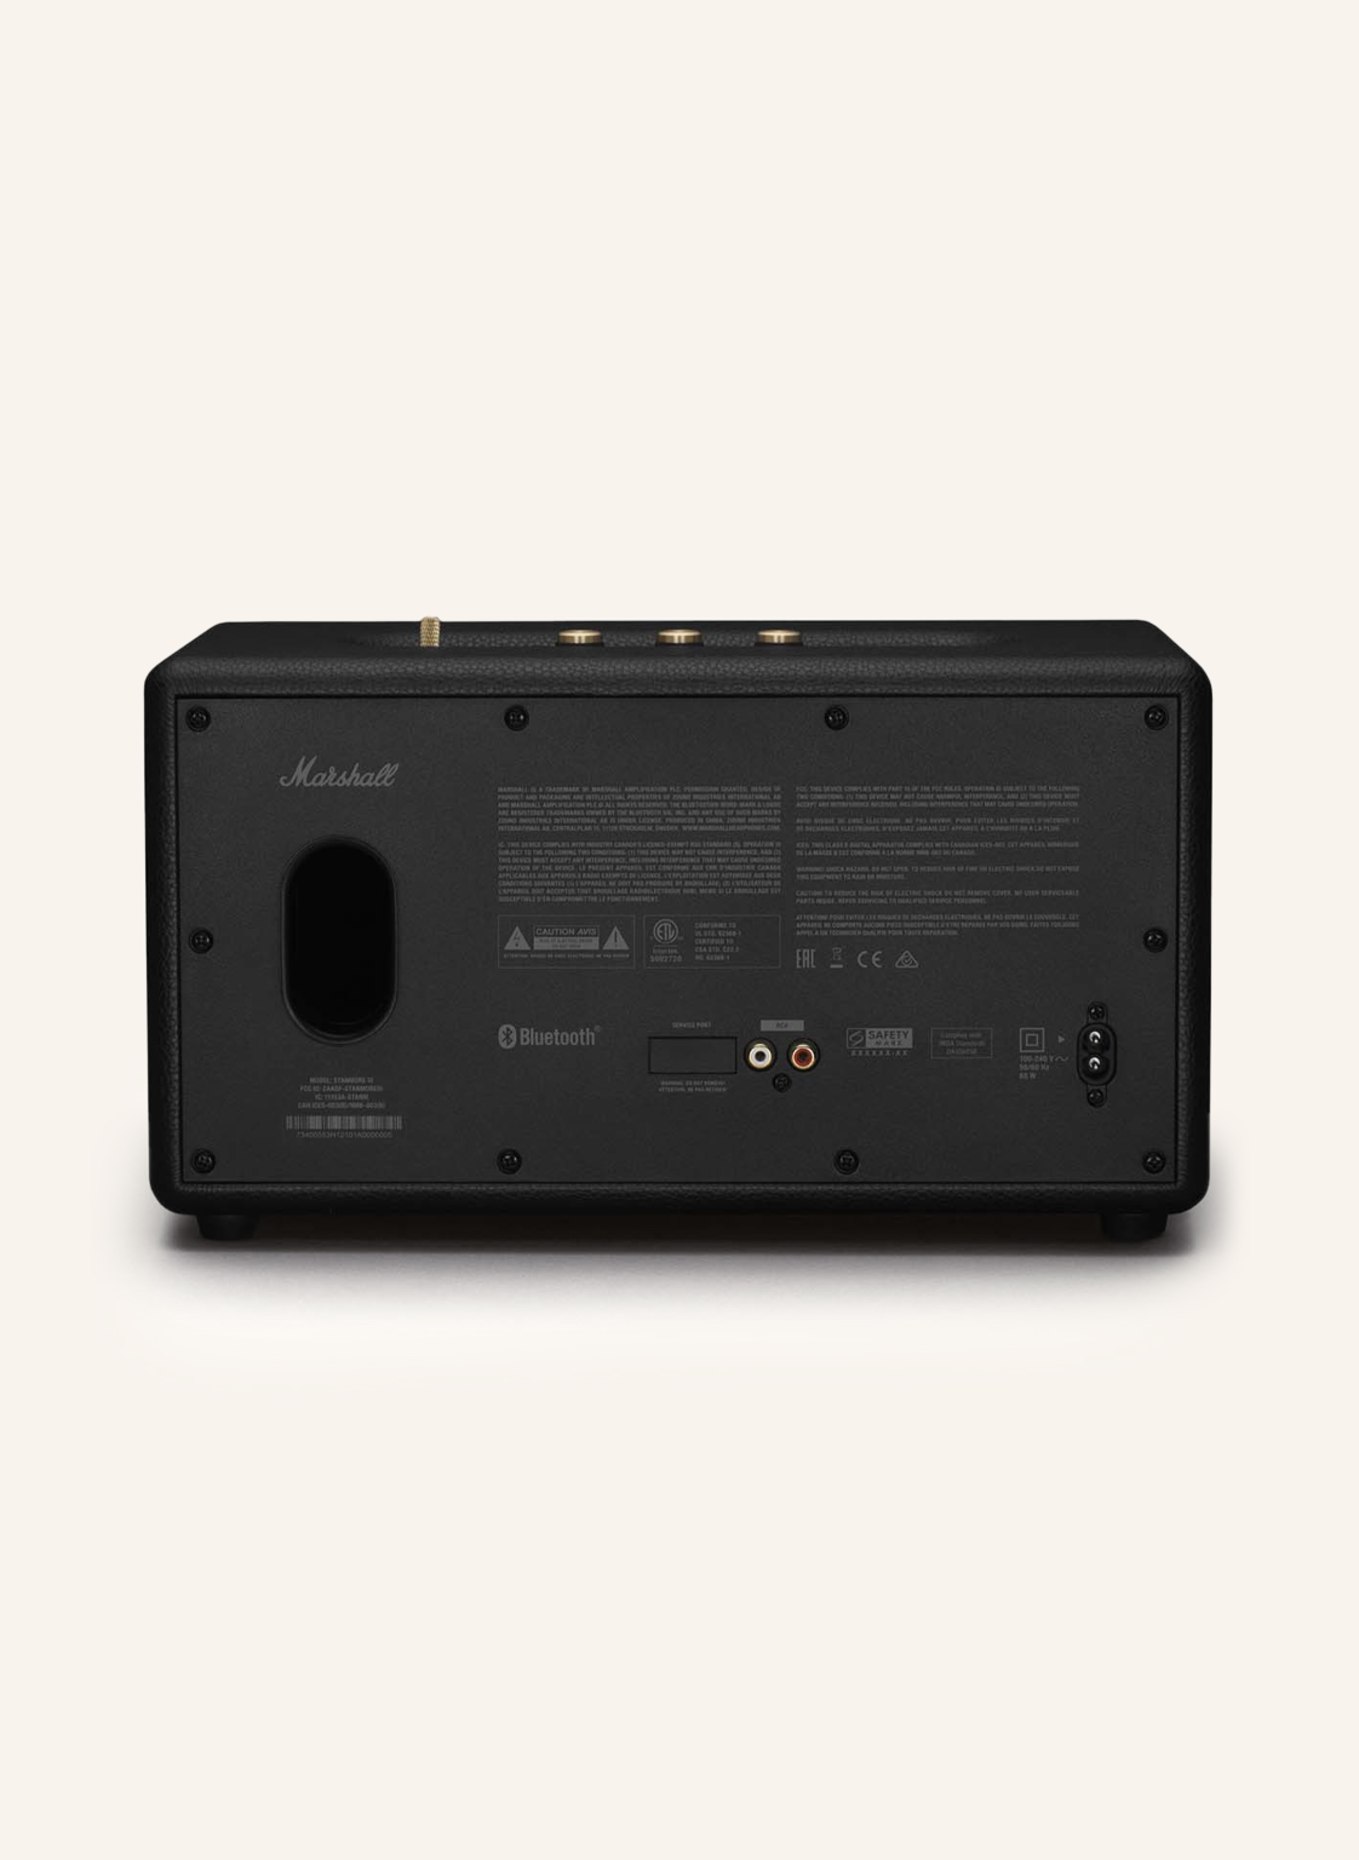 Marshall - Stanmore II Bluetooth Speaker - Black 